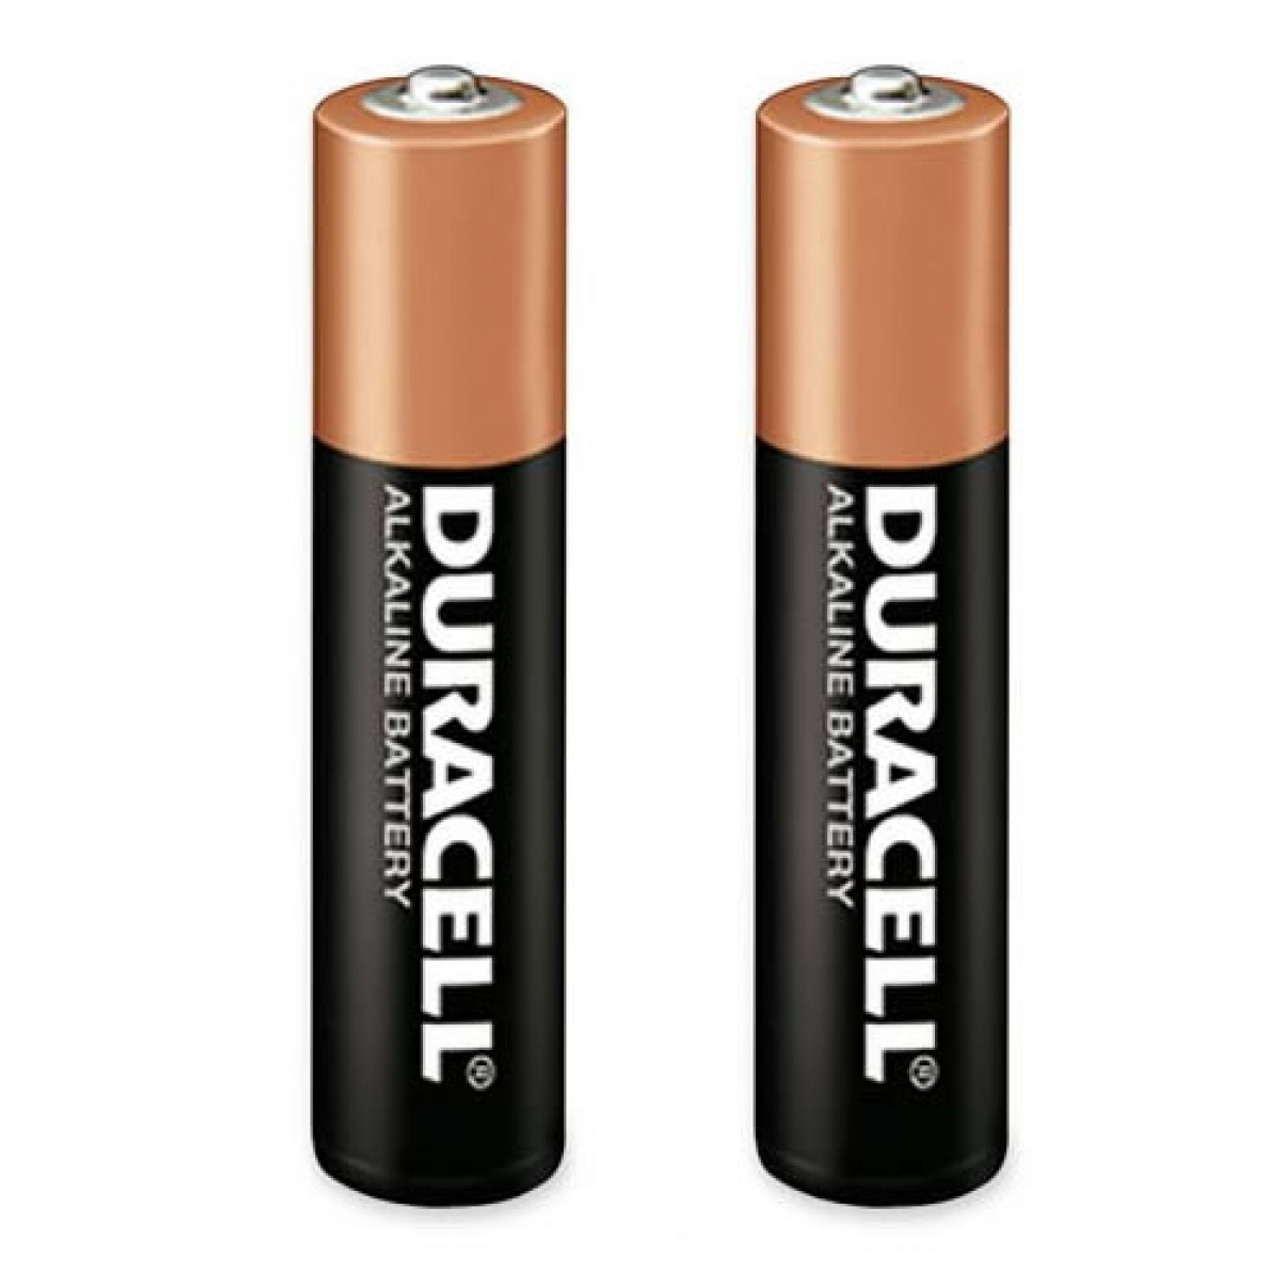 Элемент 3 батареи. Батарейки Duracell AA lr3. 2 Батарейки ААА Дюрасел. Батарейка Duracell Basic AA. Элемент питания Duracell ААА.